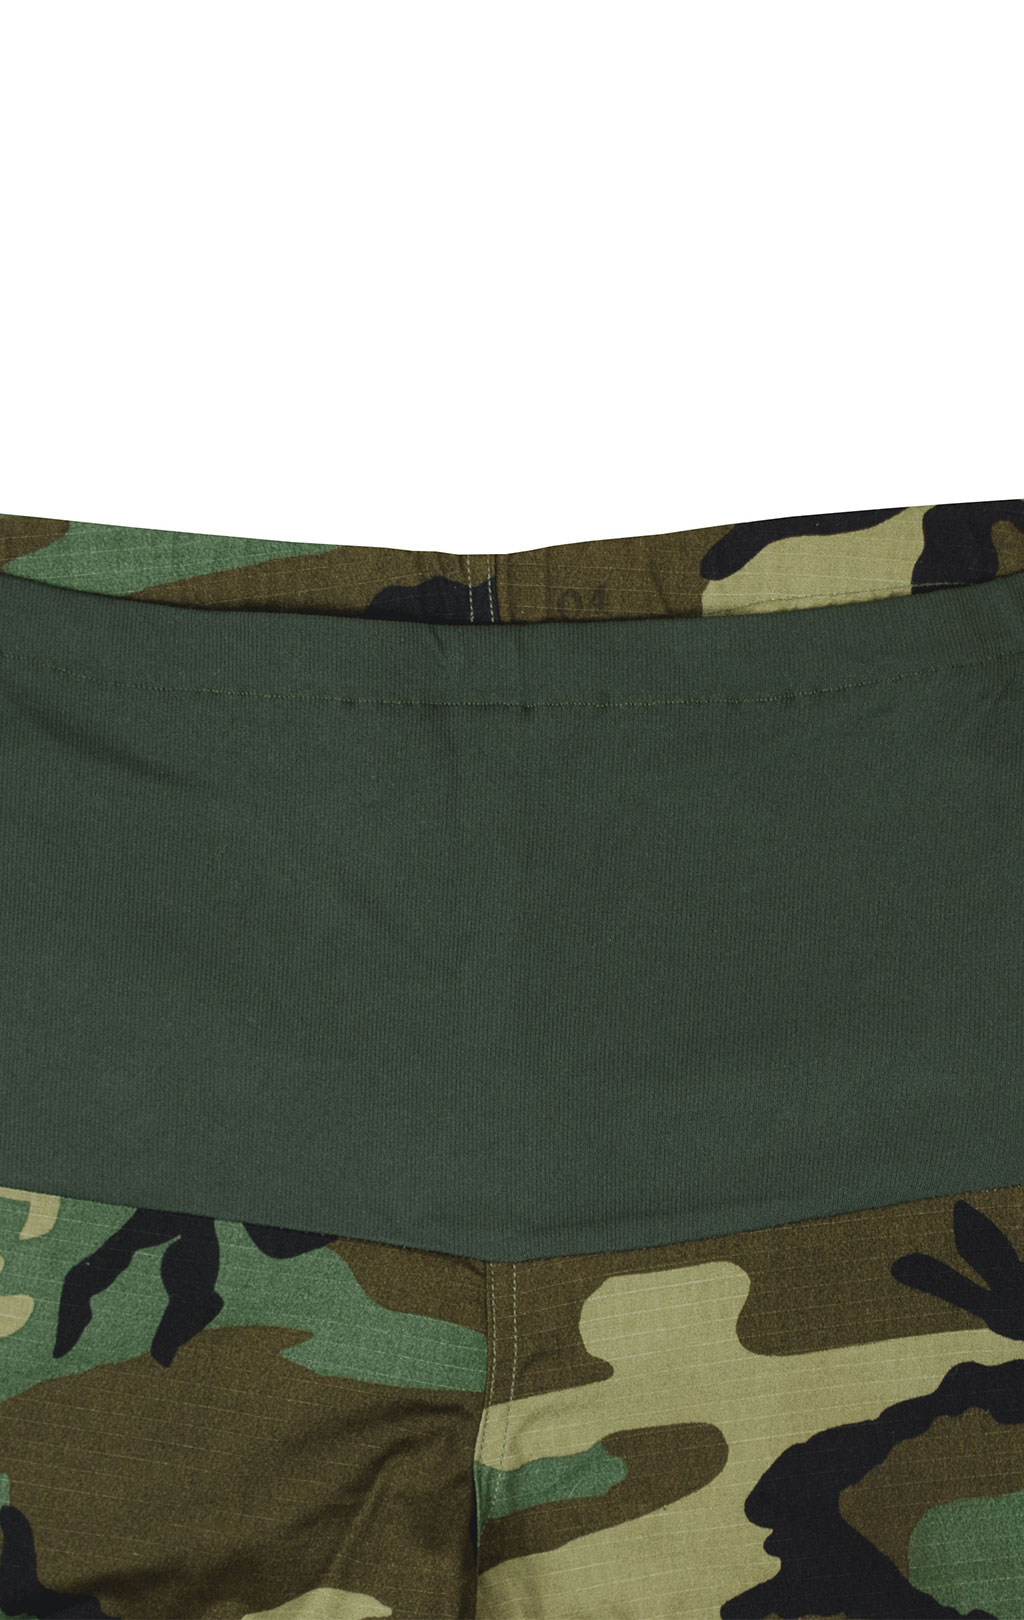 Женские брюки армейские для беременных camo woodland США